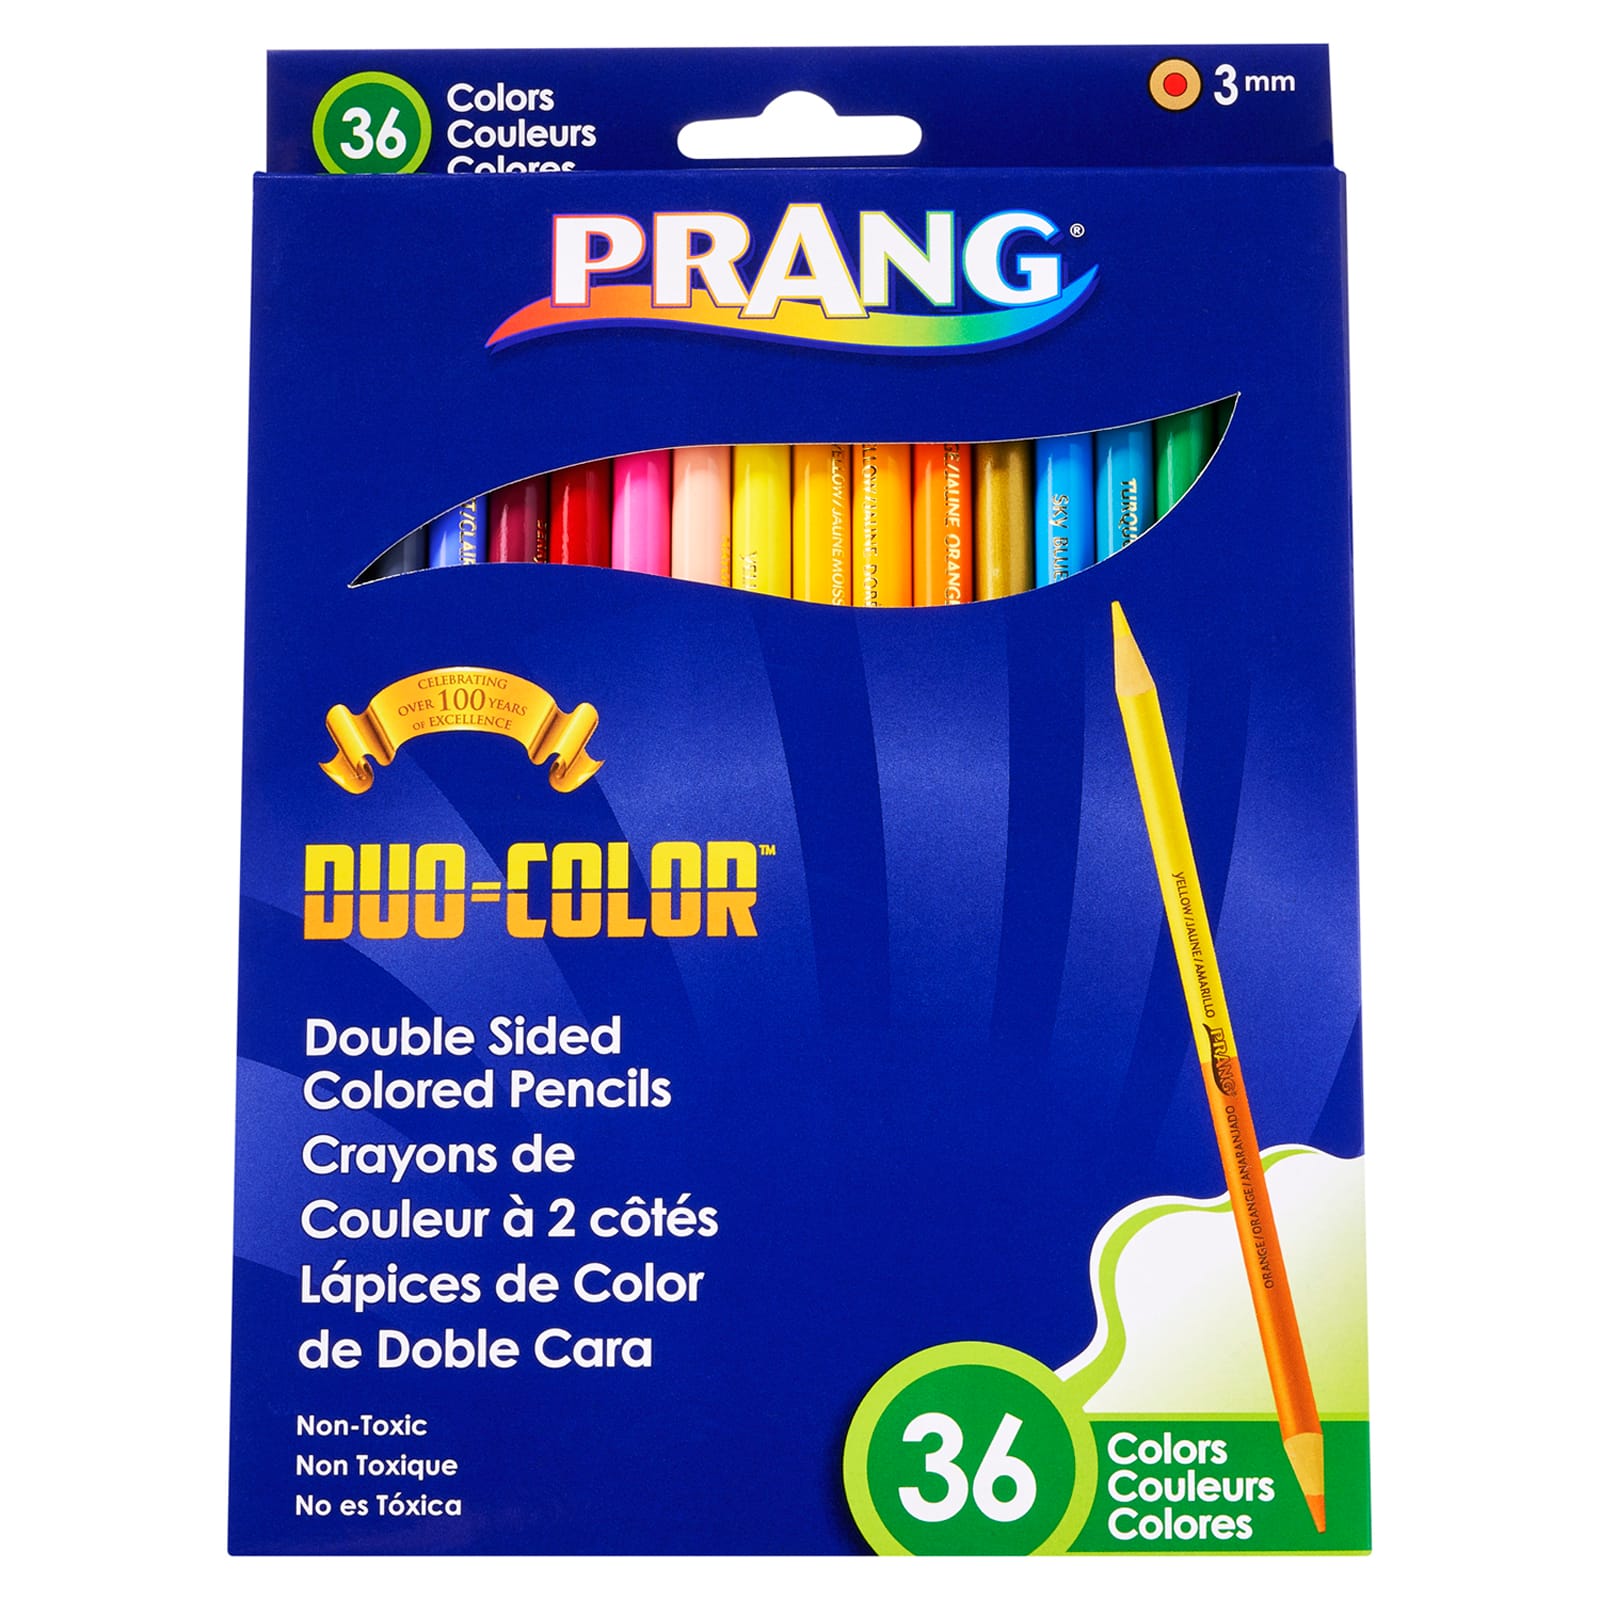 Prang&#xAE; Duo Colored&#x2122; Pencils, 3 Packs of 36 Colors